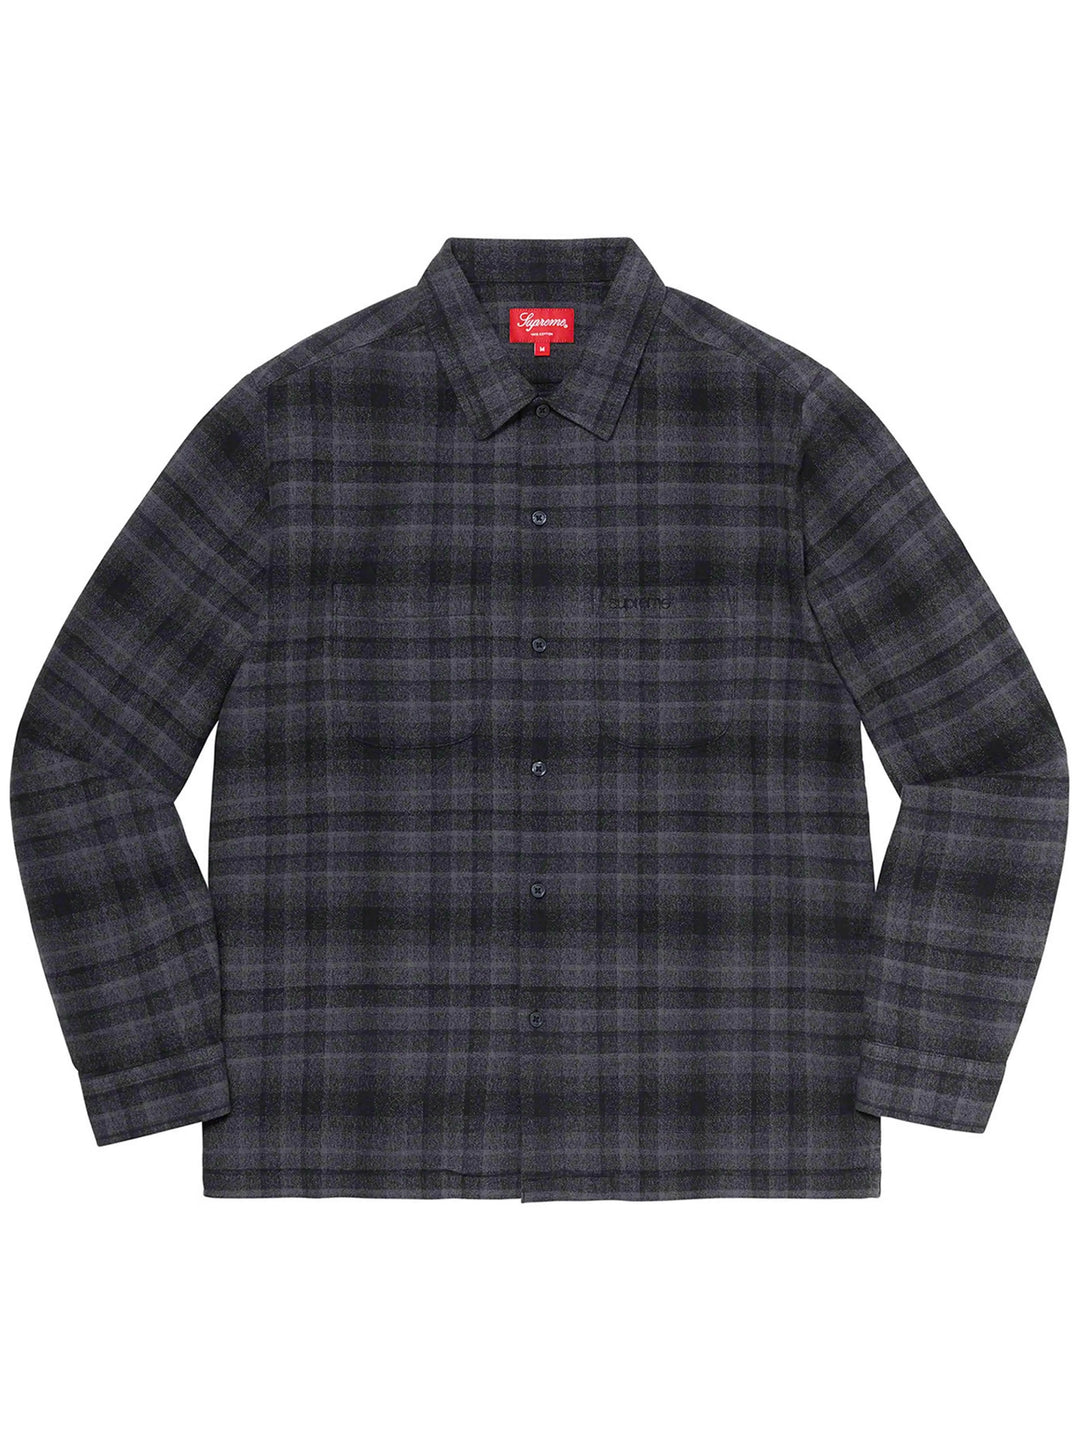 Supreme Plaid Flannel Shirt Black [SS21] Prior